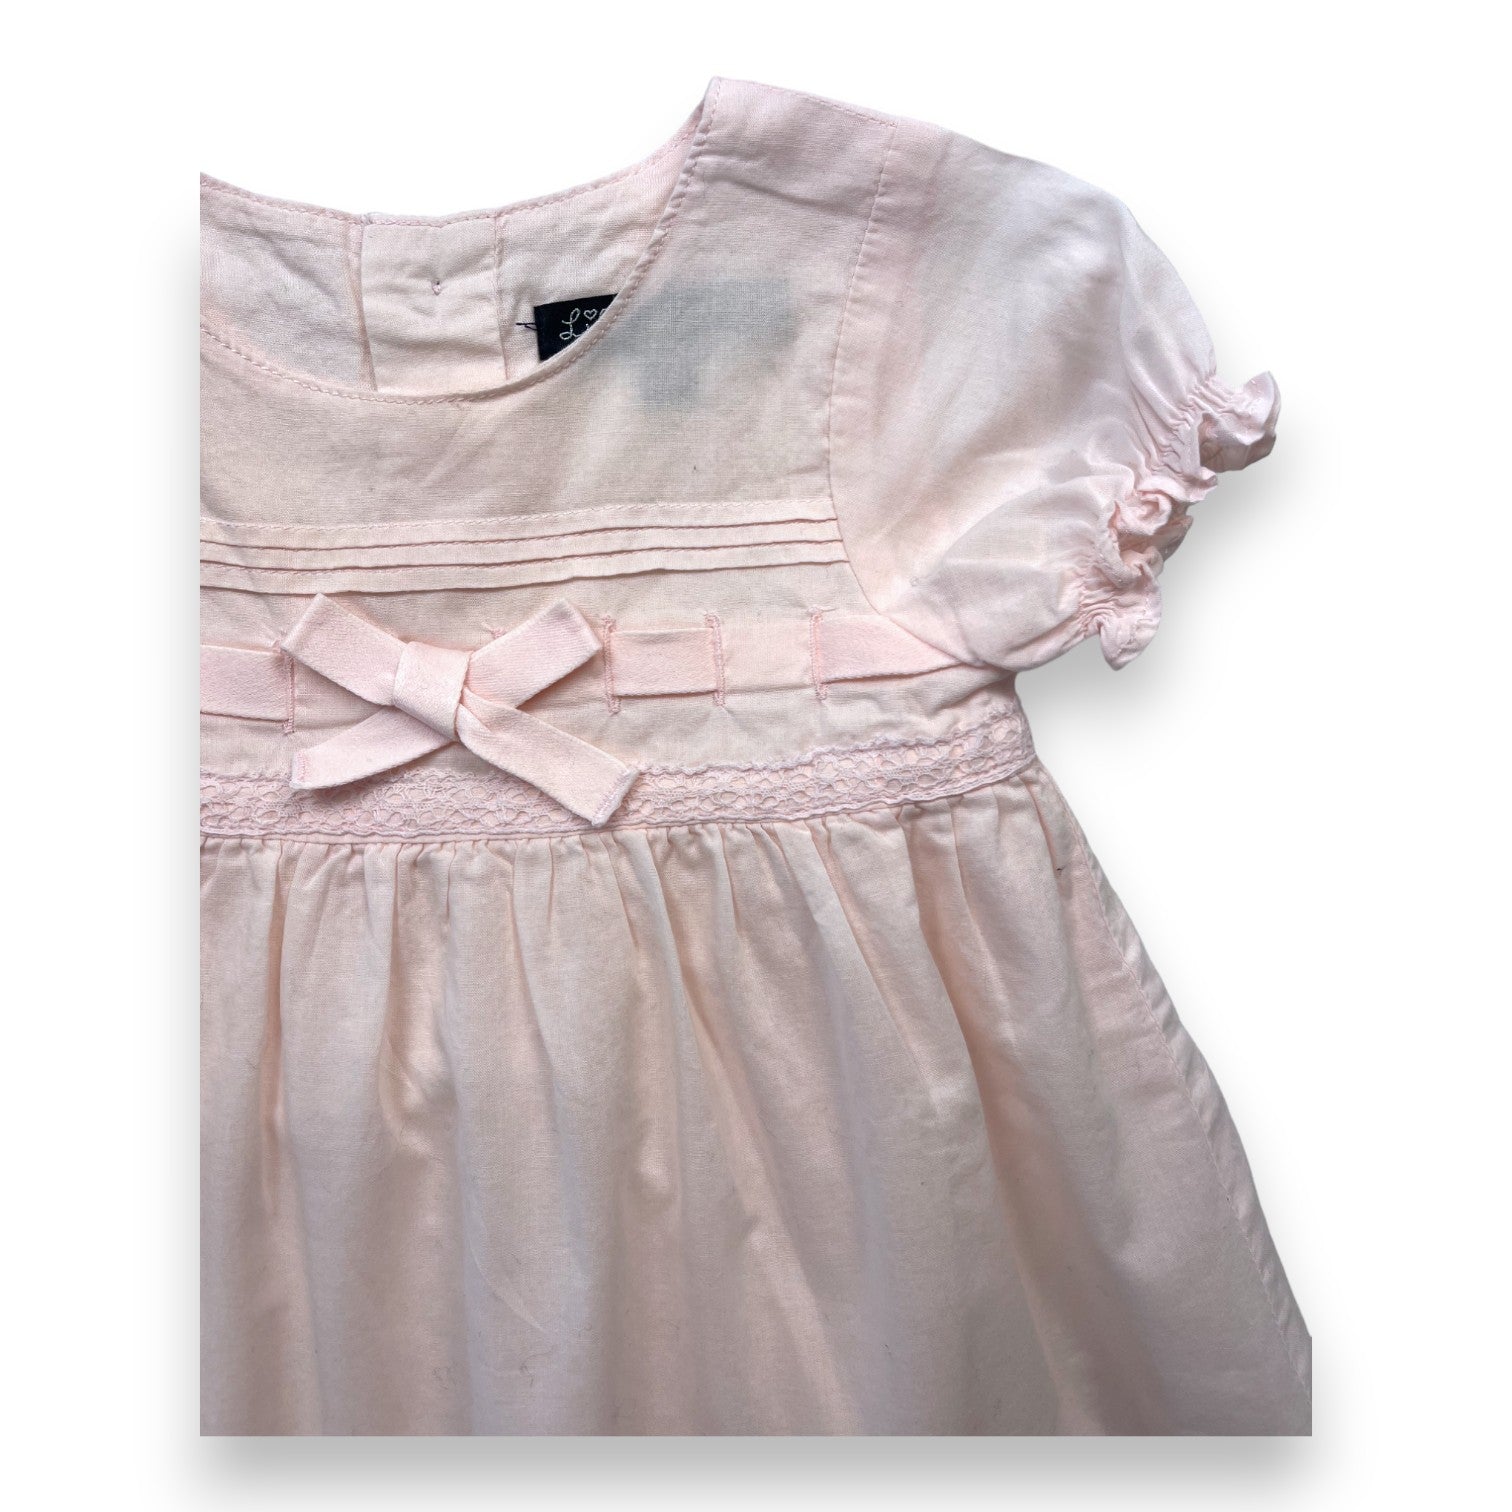 LILI GAUFRETTE - Robe rose détails dentelle - 12 mois